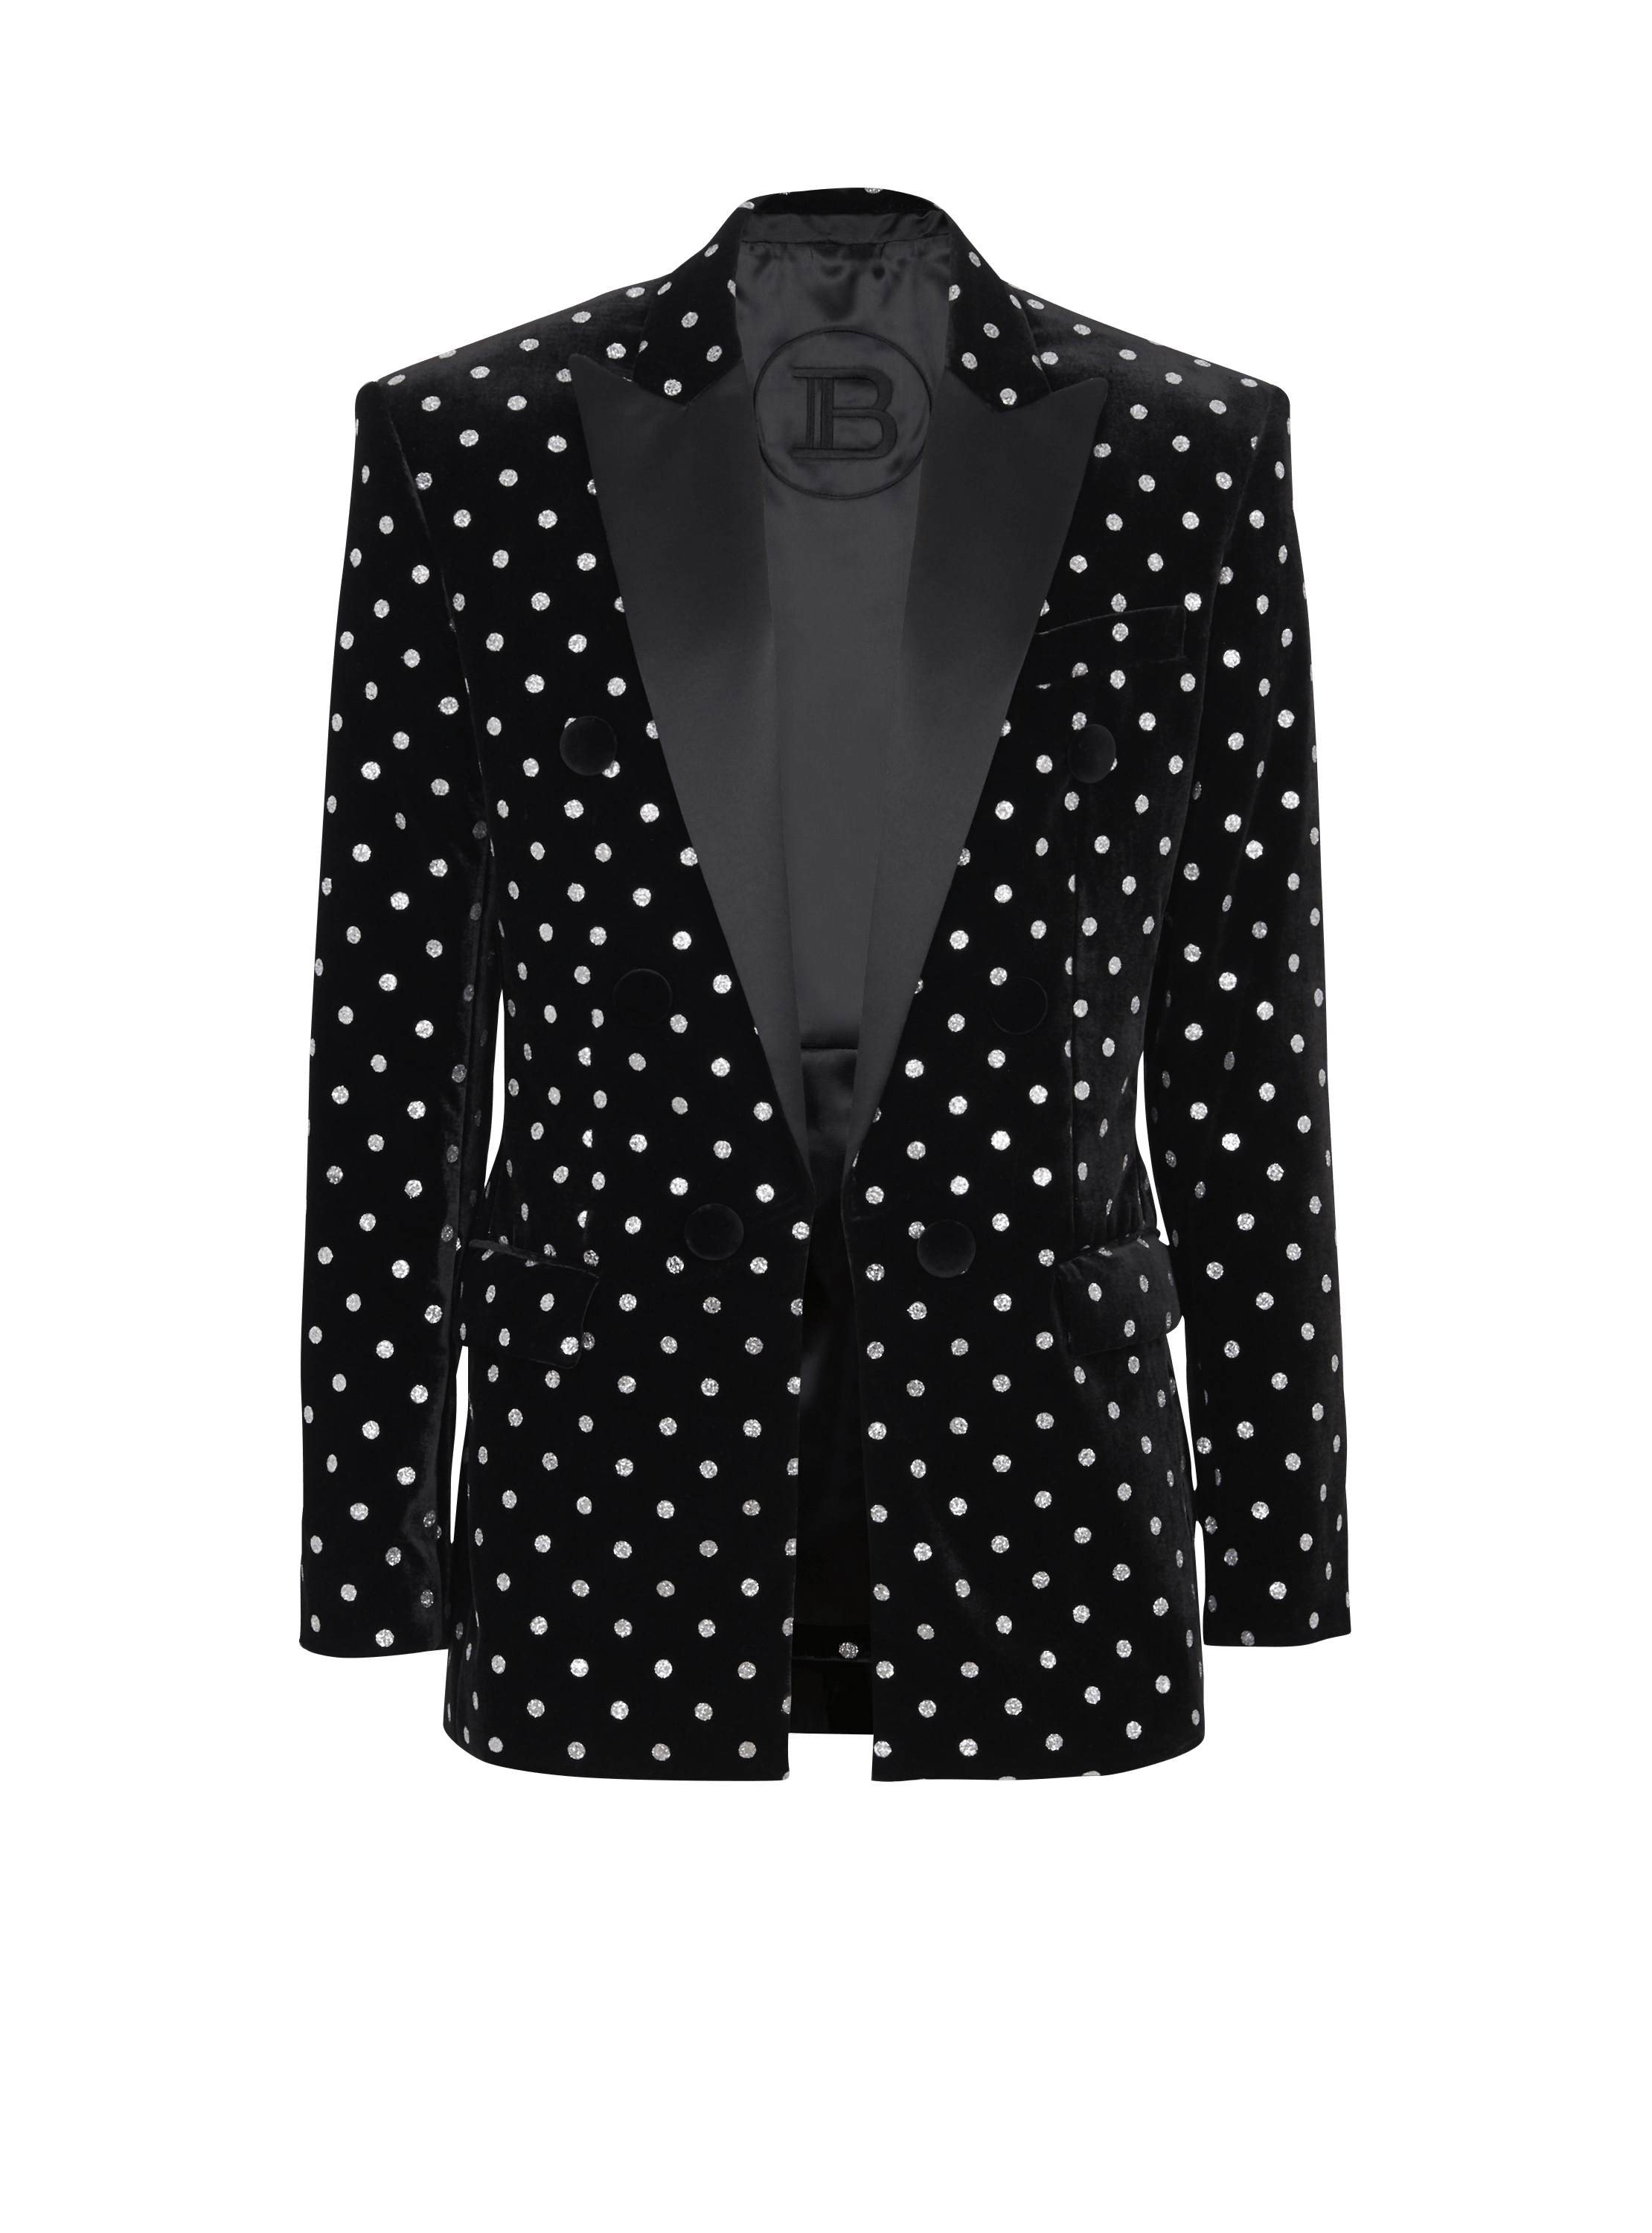 Velvet jacket with glitter dots